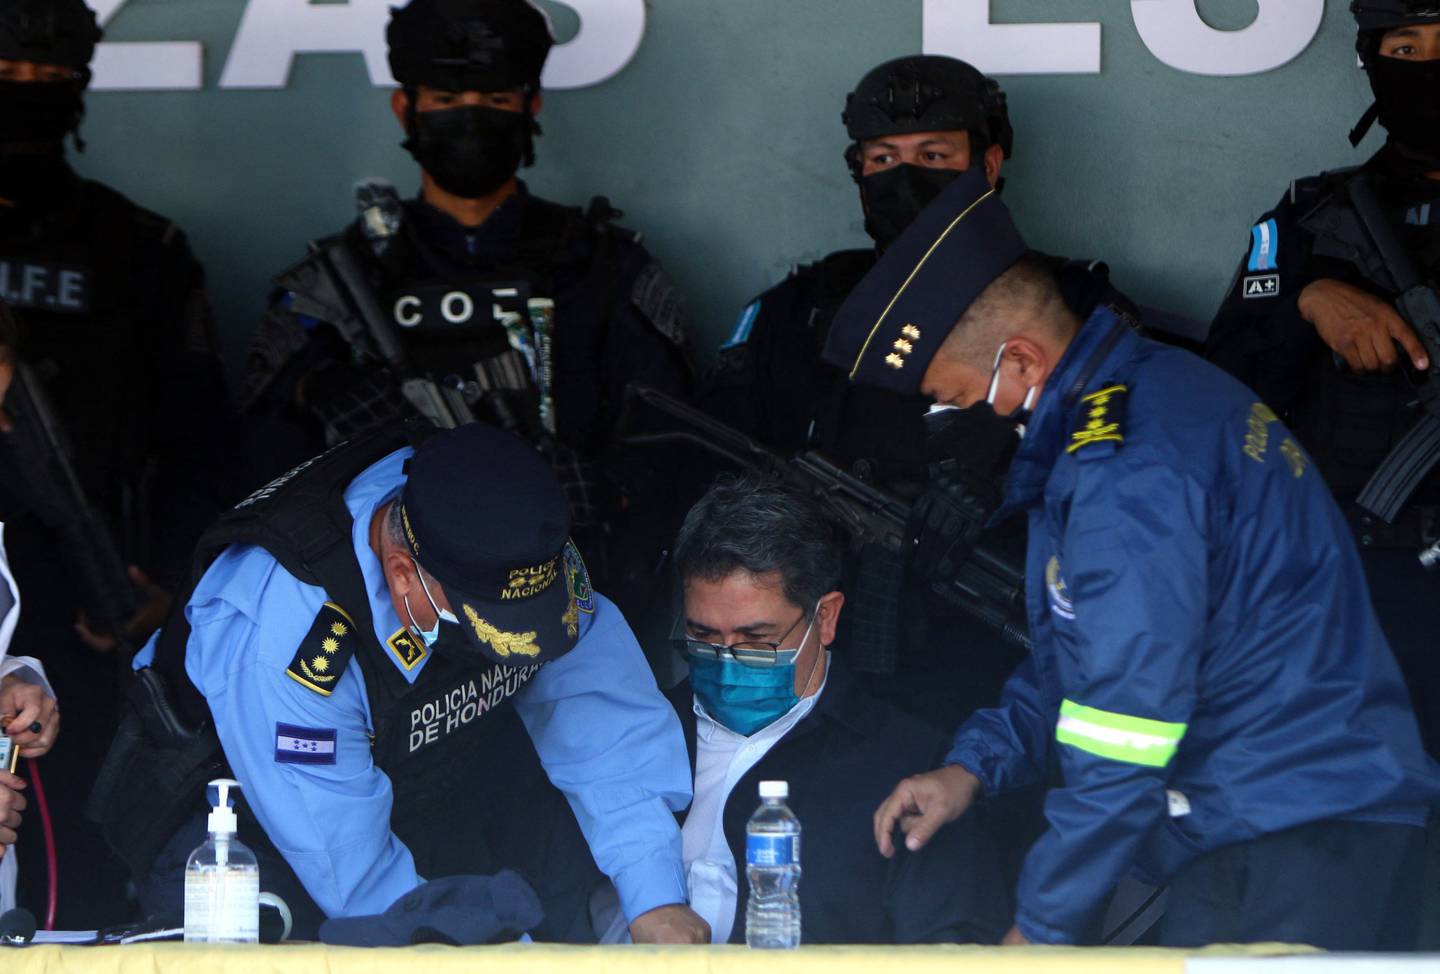 Juan Orlando Hernández, en el centro, en los cuarteles generales de la Policía de Honduras en Tegucigalpa el 15 de febrero.Fuente: AFP/Getty Images